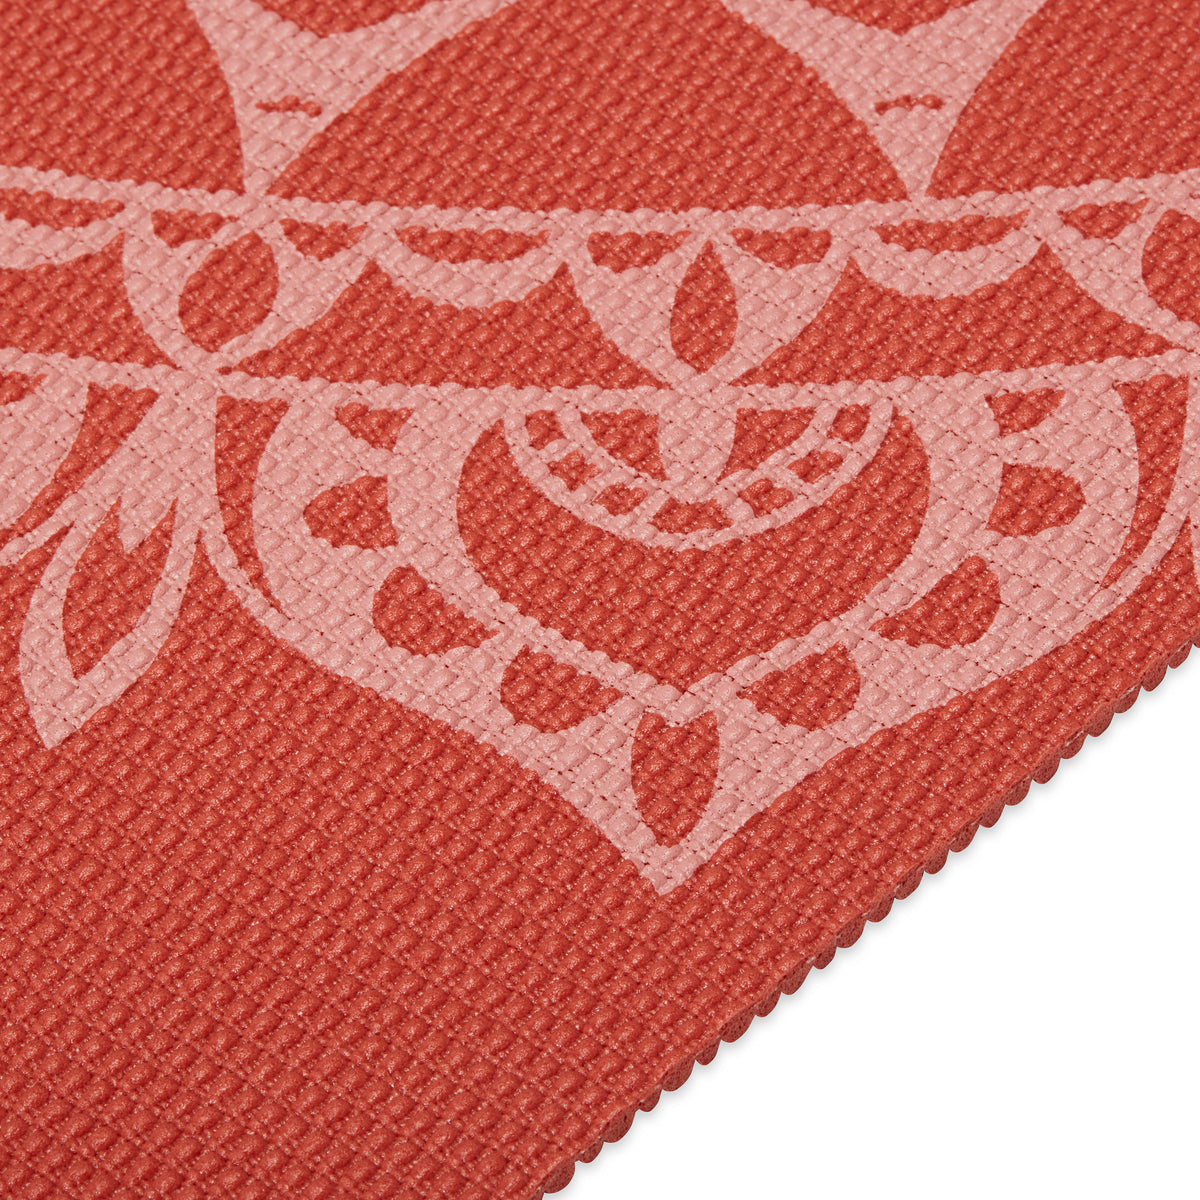 Printed Marrakesh Yoga Mat (5mm) Sunburnt up close